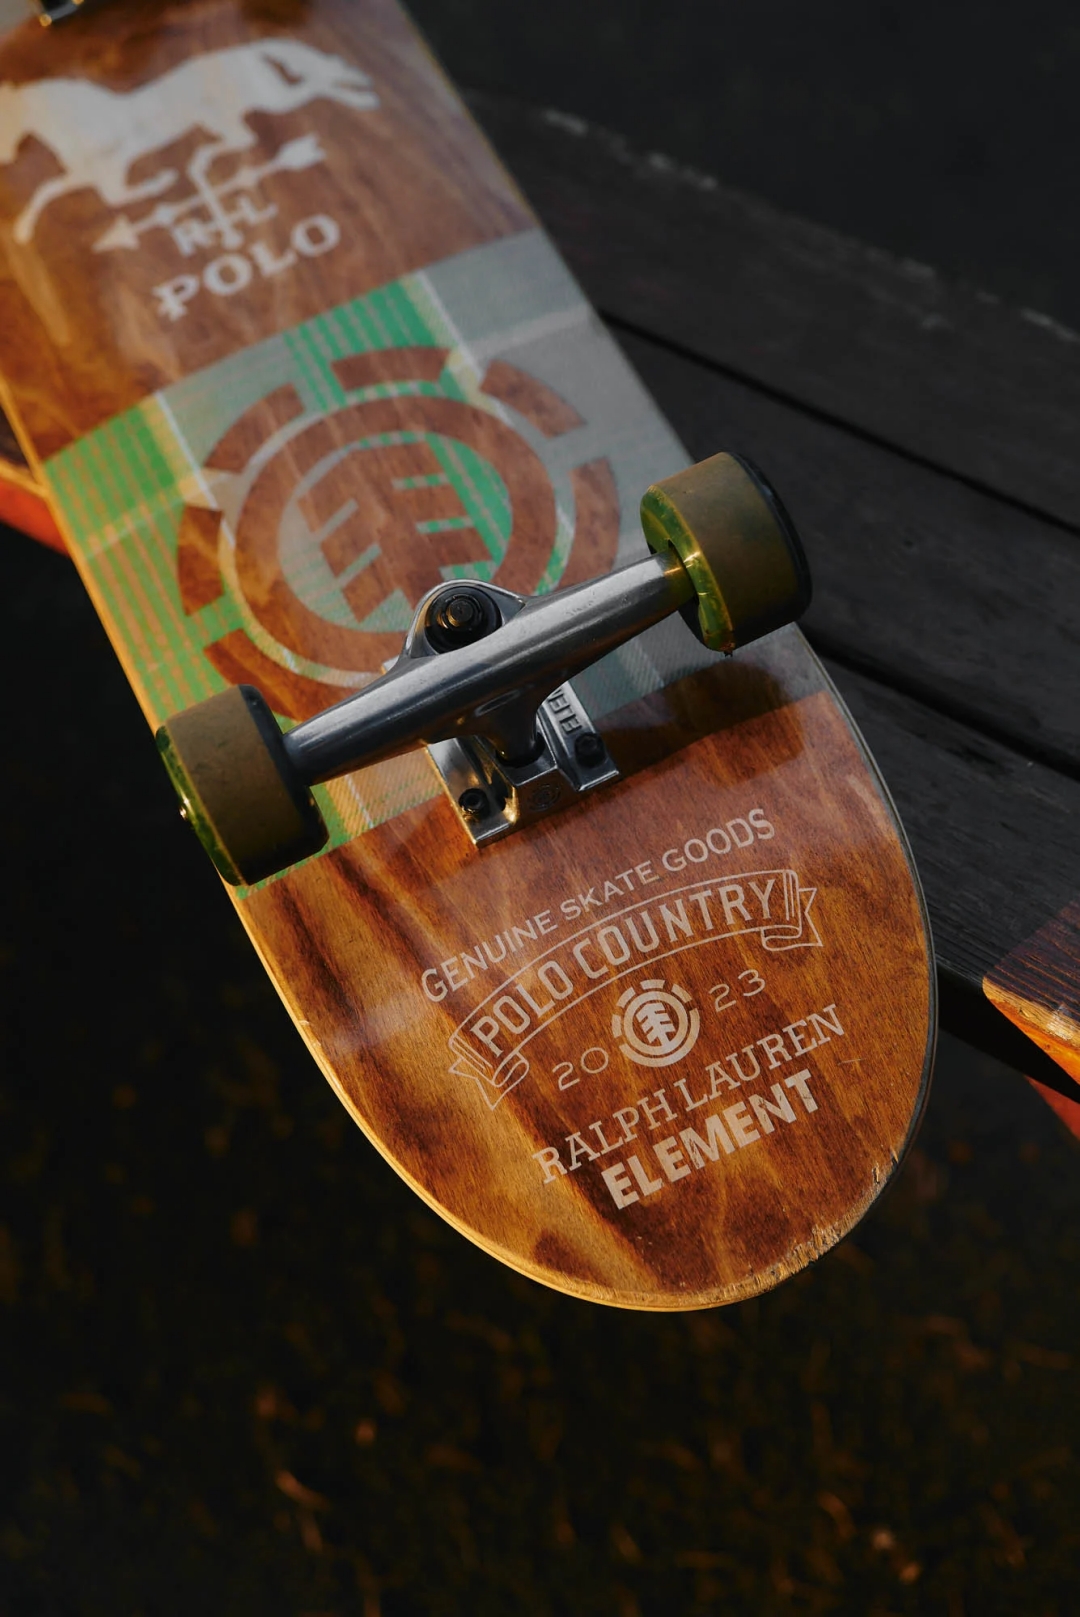 ポロ ラルフローレン × エレメント スケートボード コラボからアパレルとスケートボードなどが10/6 発売 (POLO RALPH LAUREN Element Skateboards)